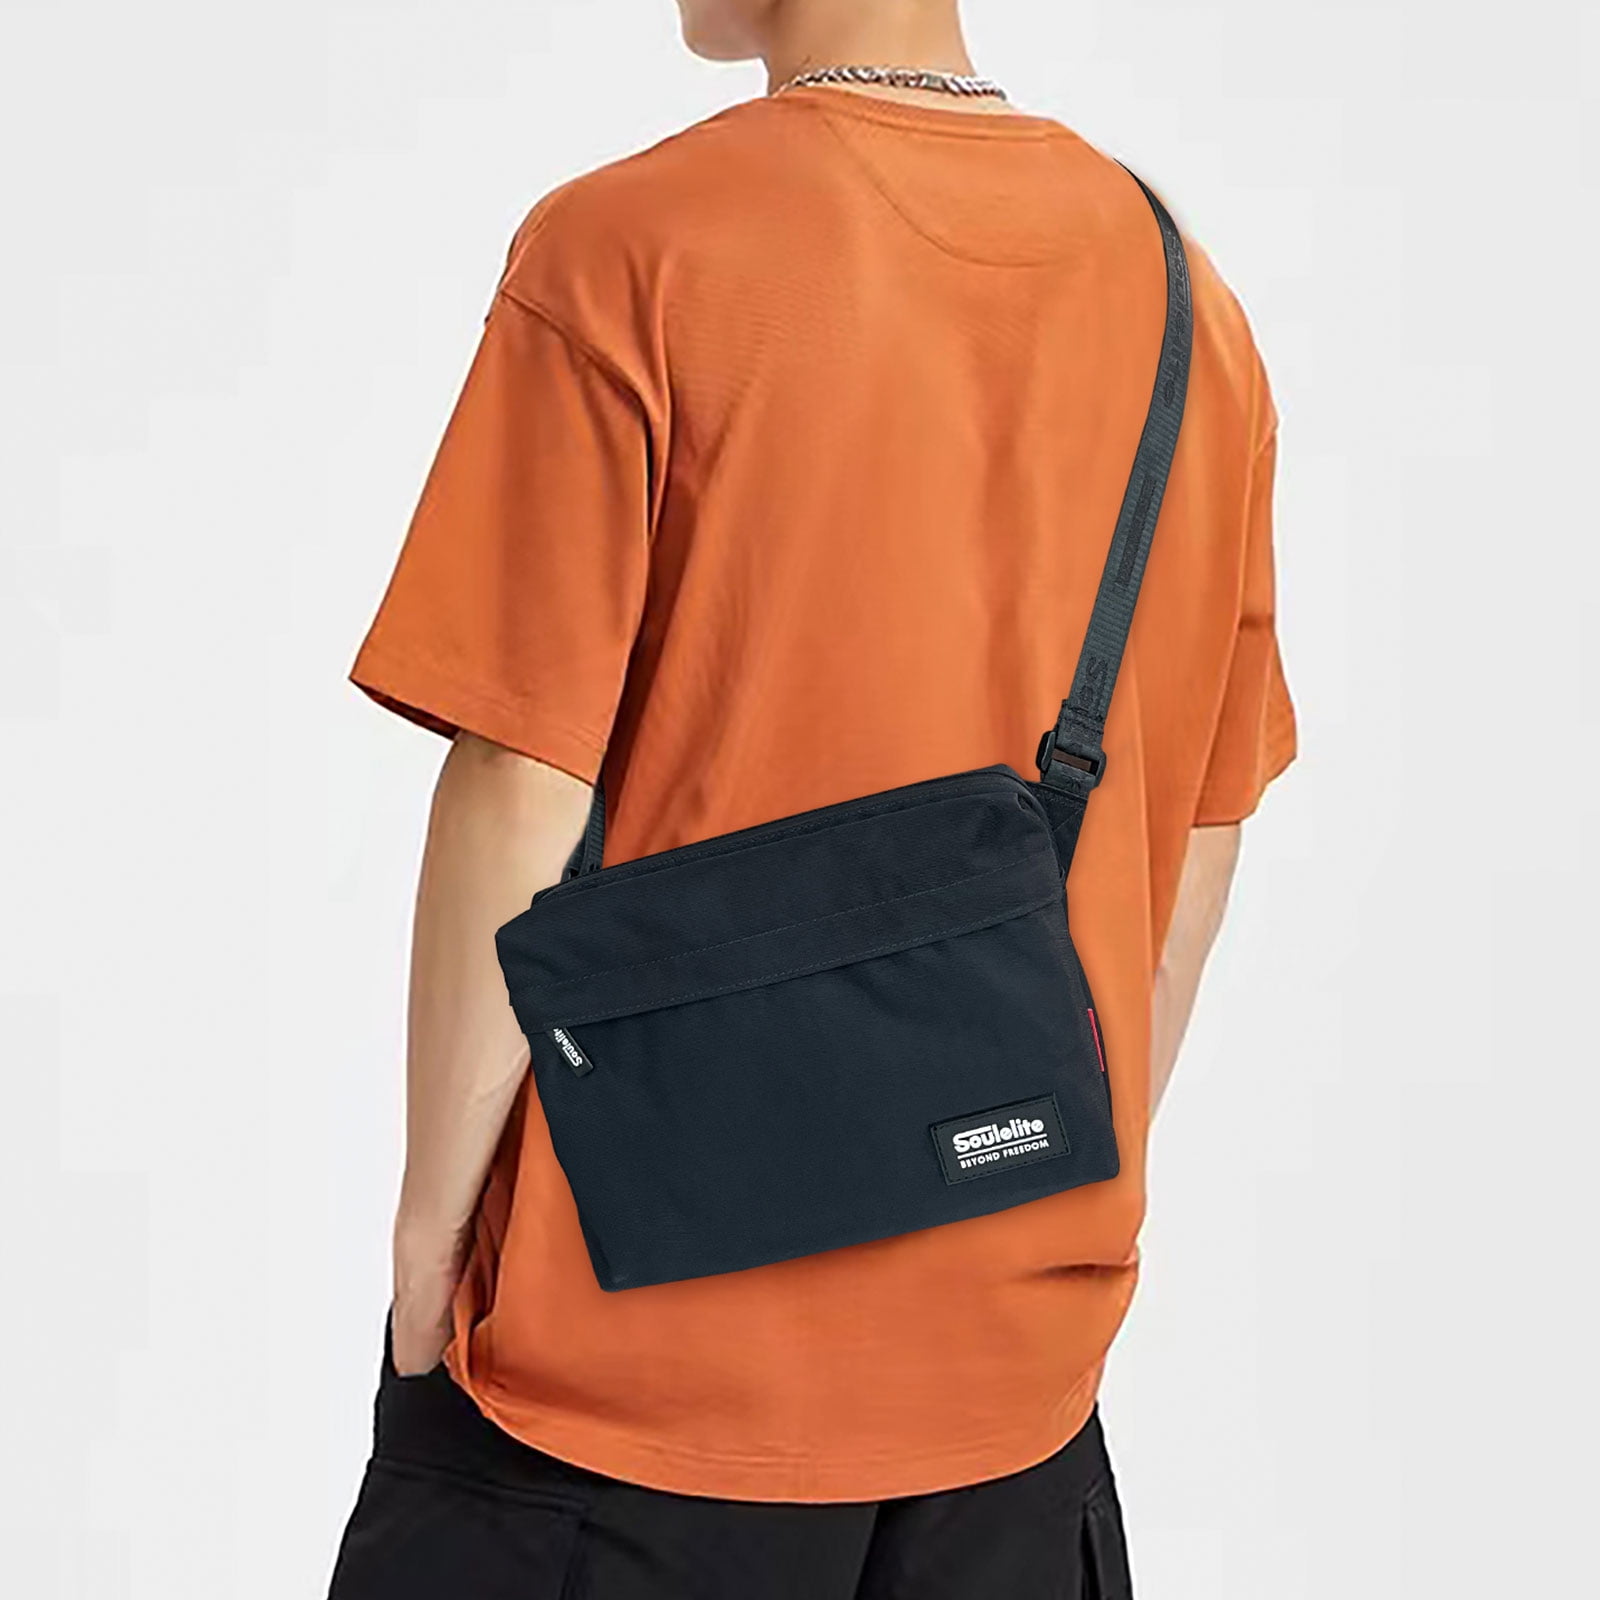 Simlim Small Crossbody Bag for Men, Mini Side Shoulder Bag Lightweight Cross Body Bag for Women Men, Water Resistant Satchel Bag Nylon Green, Adult